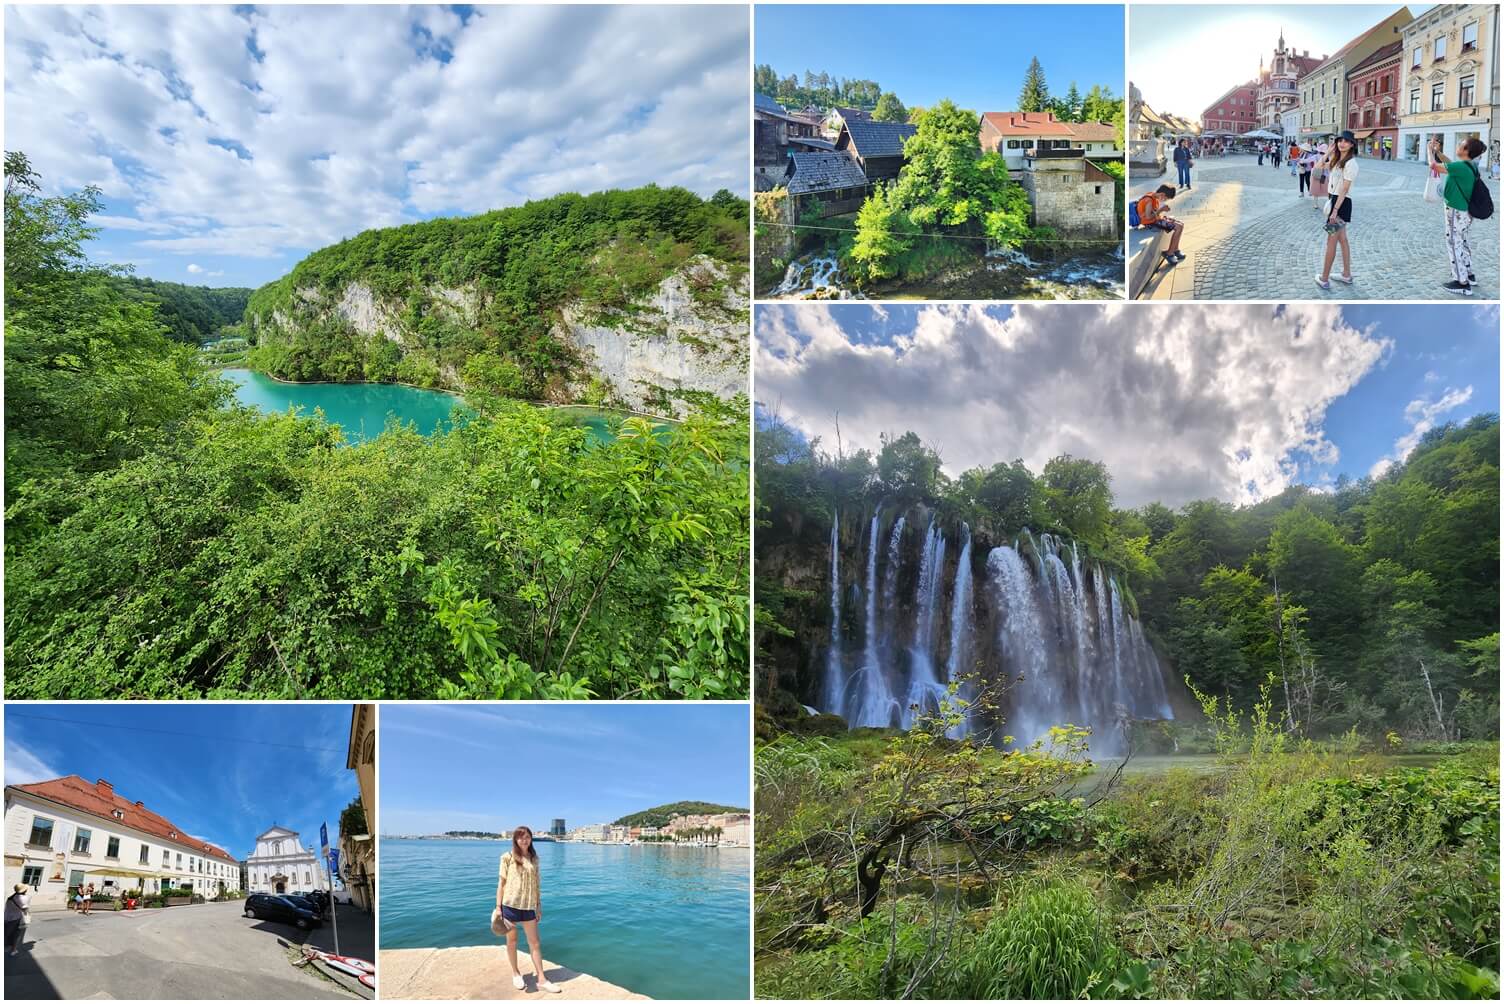 克羅埃西亞斯洛維尼亞旅遊11大景點介紹看這篇